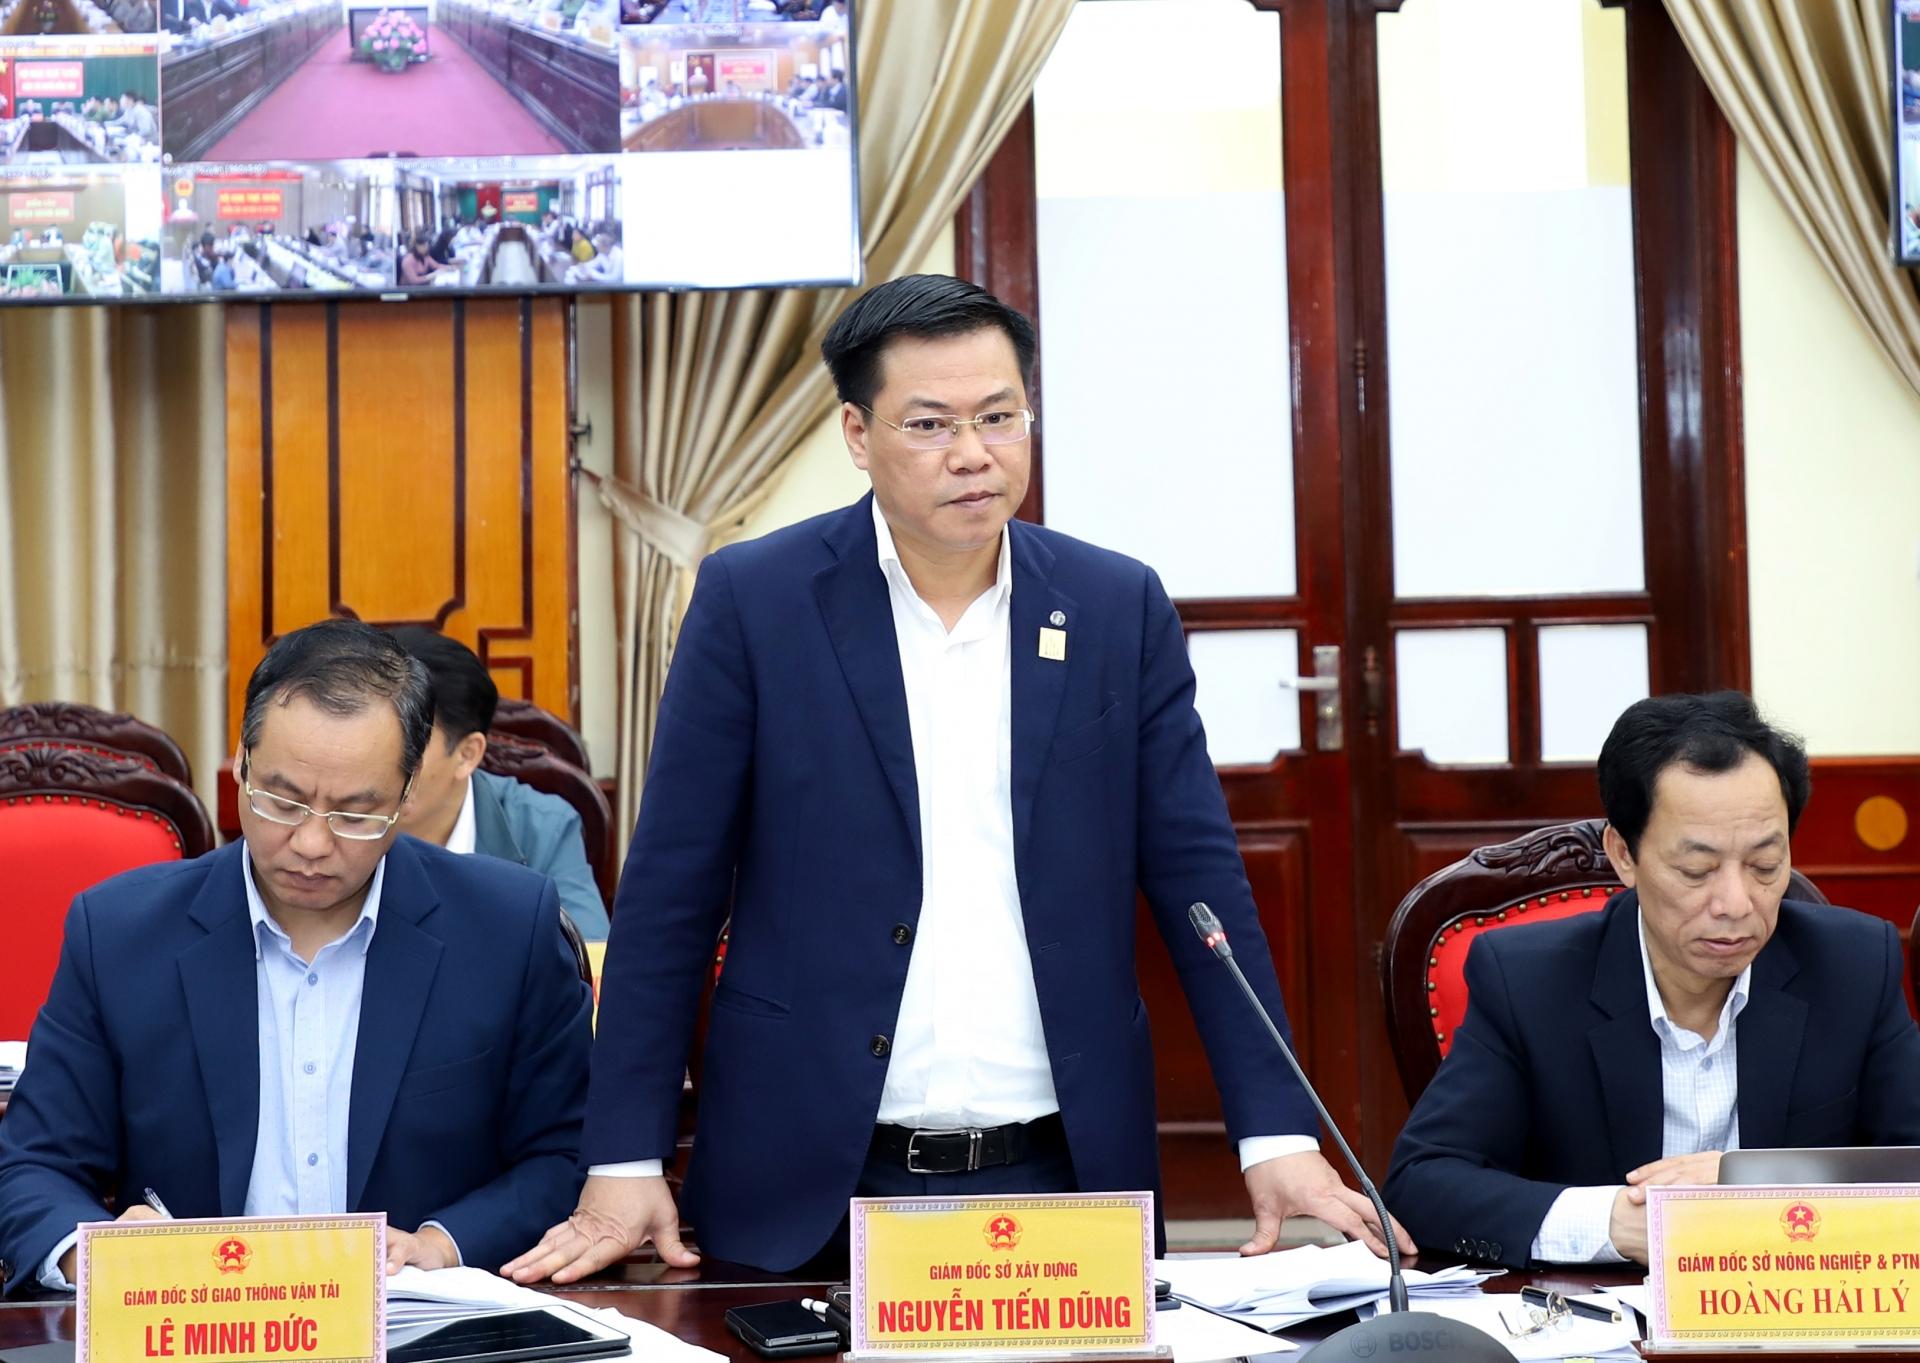 Giám đốc Sở Xây dựng Nguyễn Tiến Dũng đề nghị các huyện phối hợp chặt chẽ với các sở chuyên ngành trong thực hiện thủ tục đầu tư xây dựng cơ bản, nhất là quản lý quy hoạch xây dựng đảm bảo đúng quy định.